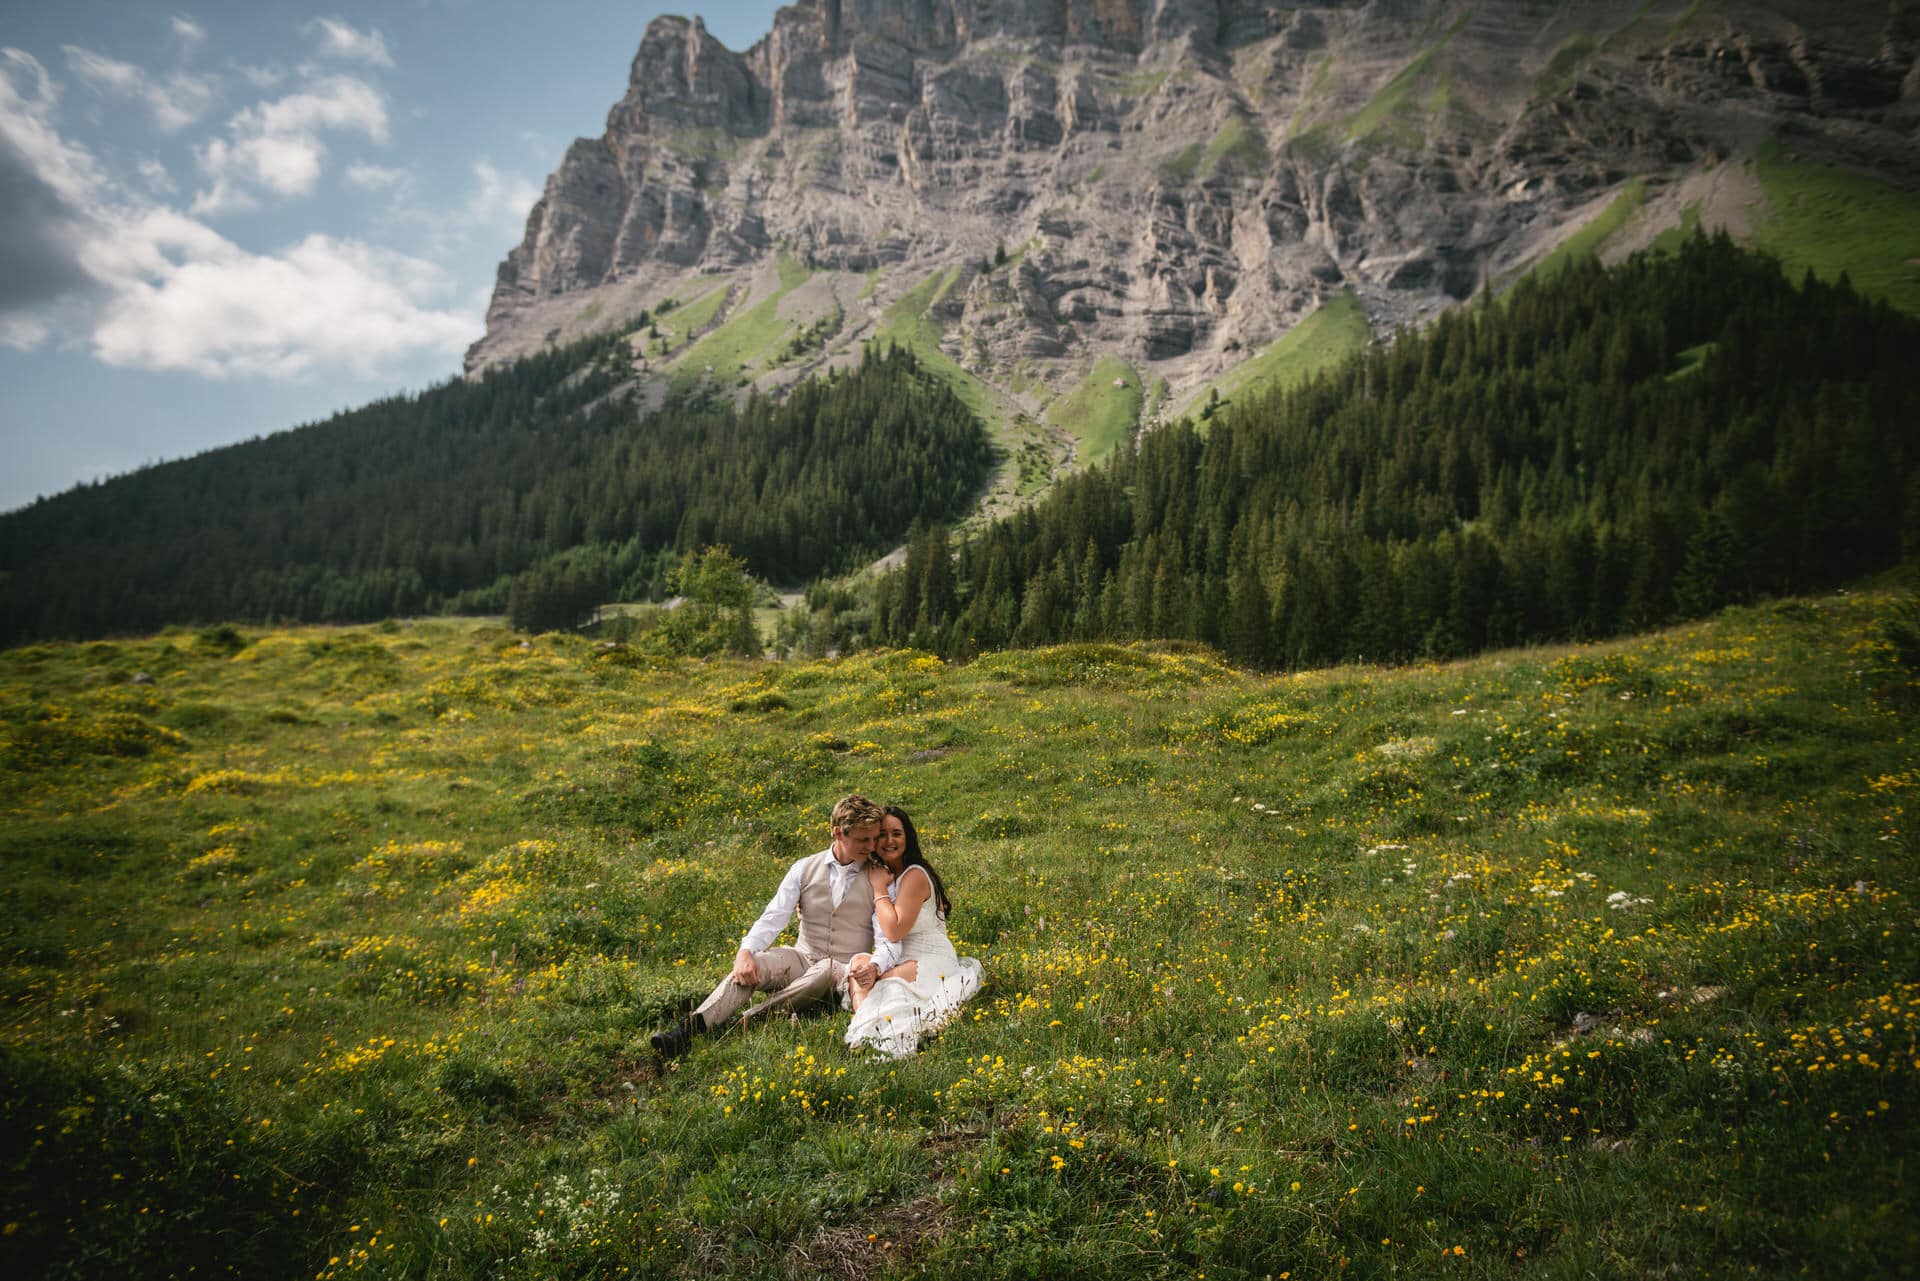 Alpine beauty as love's backdrop - hiking elopement in Switzerland.